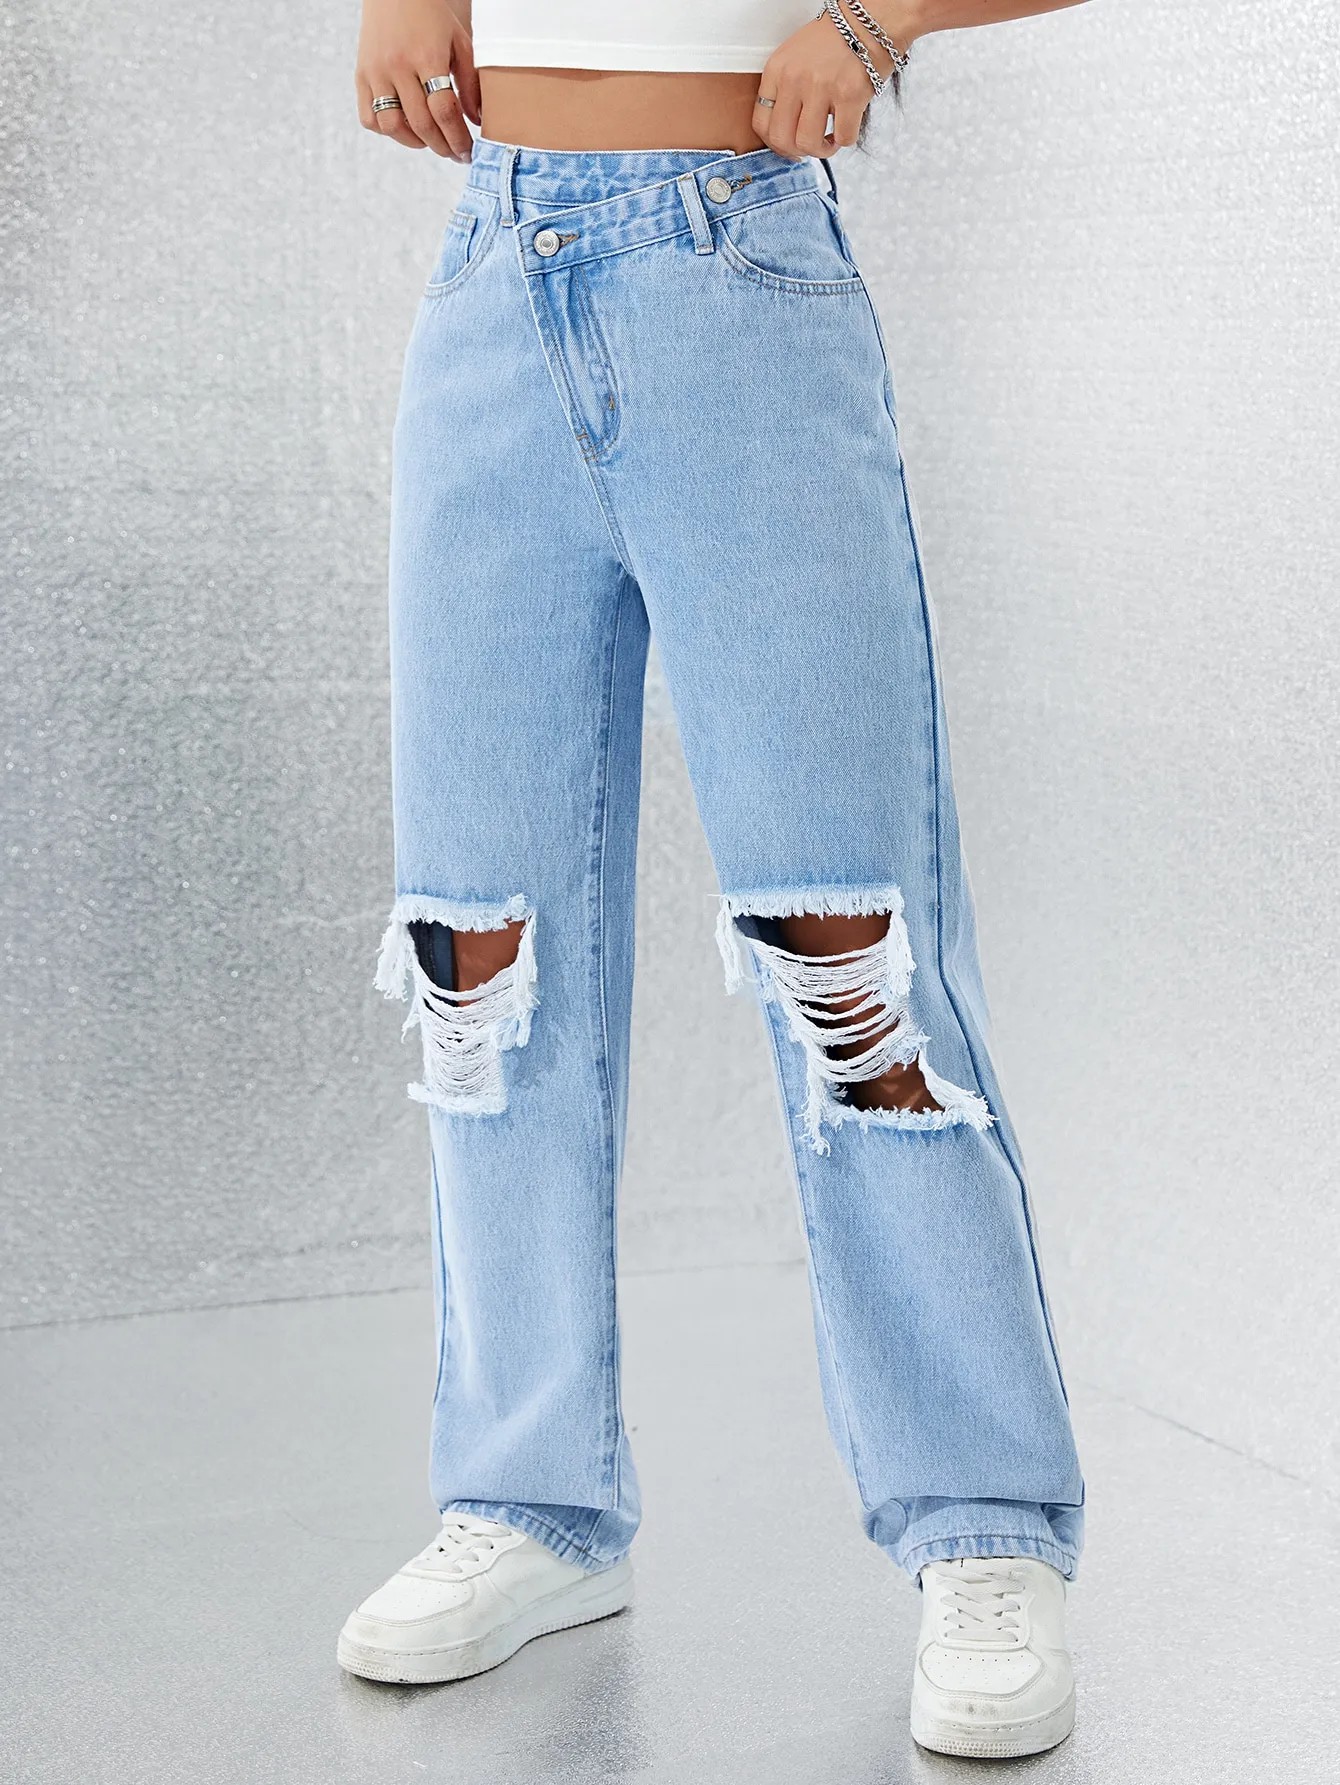 Fektheri e entsoeng ka asymmetrical thekeng e hahola jeans e otlolohileng